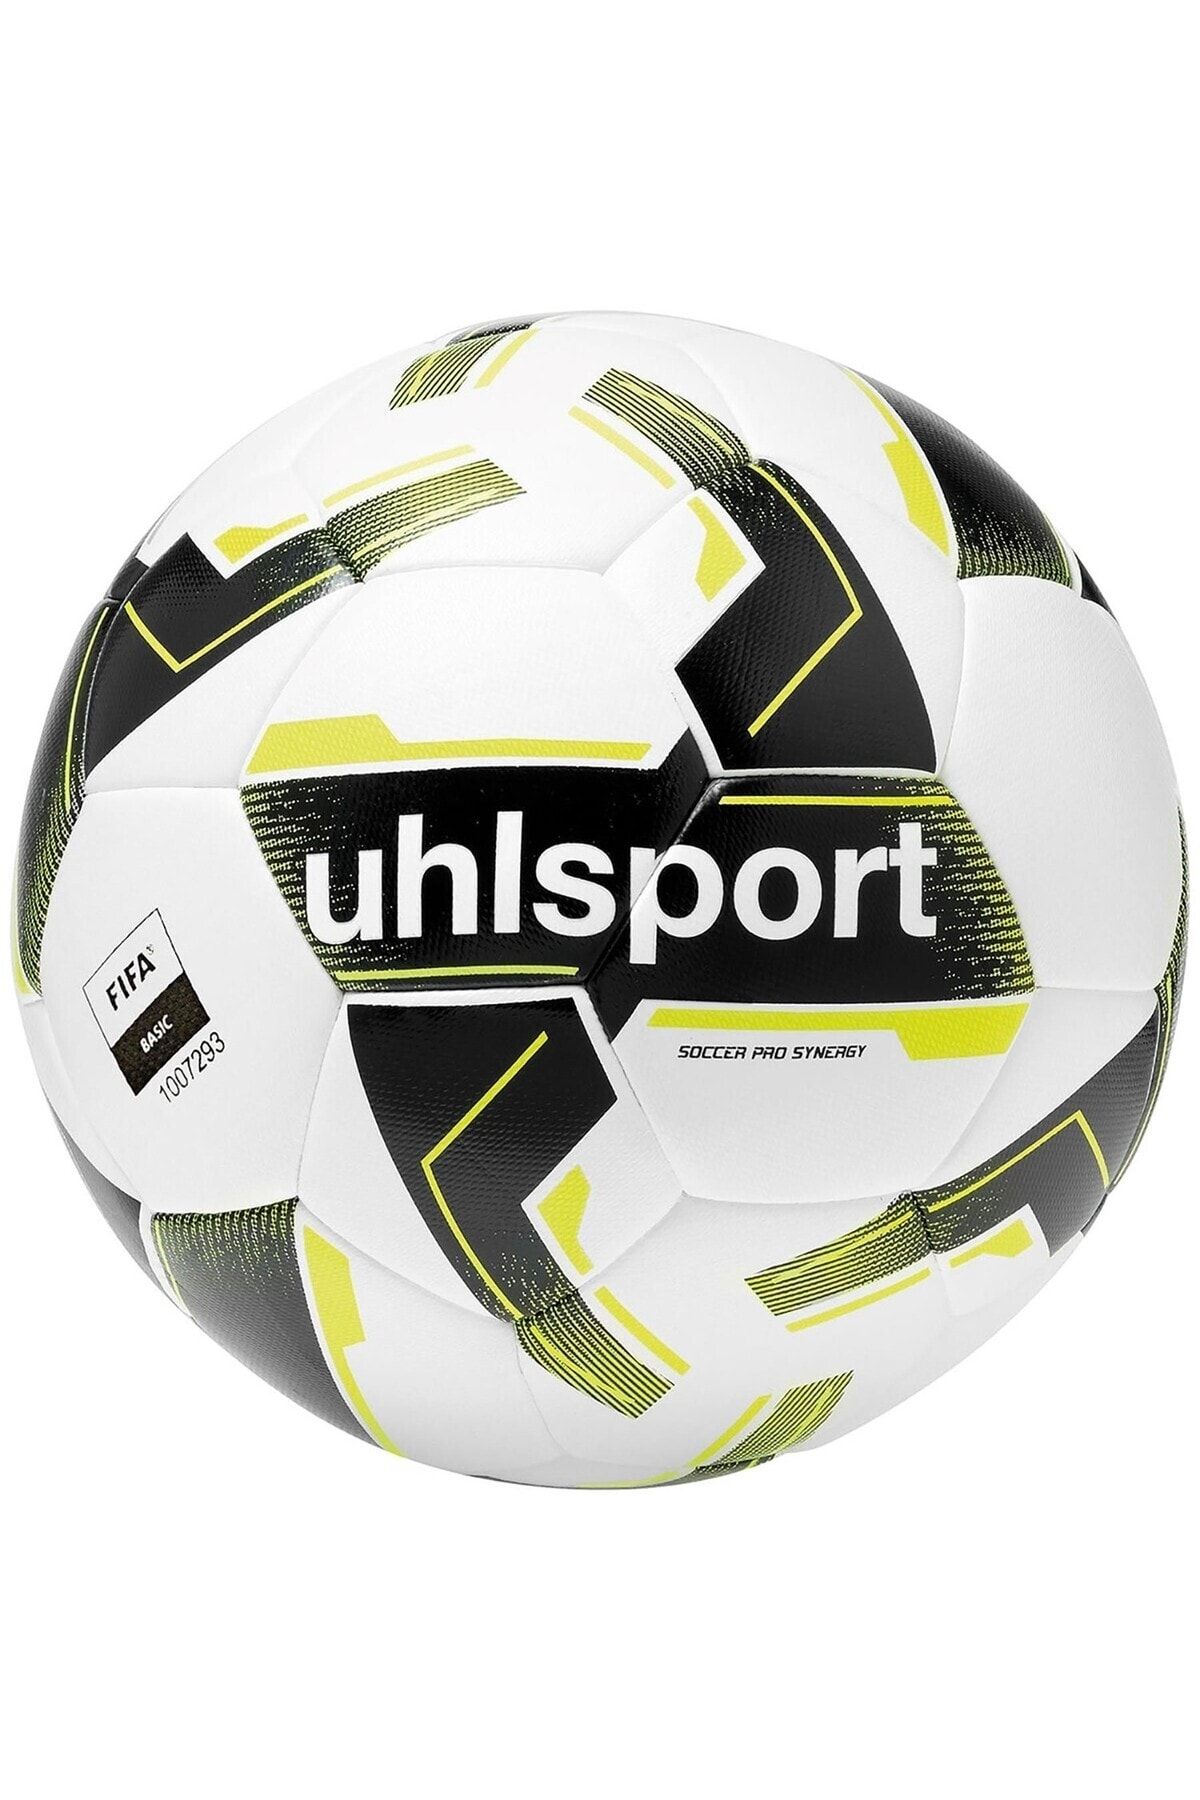 uhlsport Futbol Topu Soccer Pro Synergy (IMS ONAYLI) Top